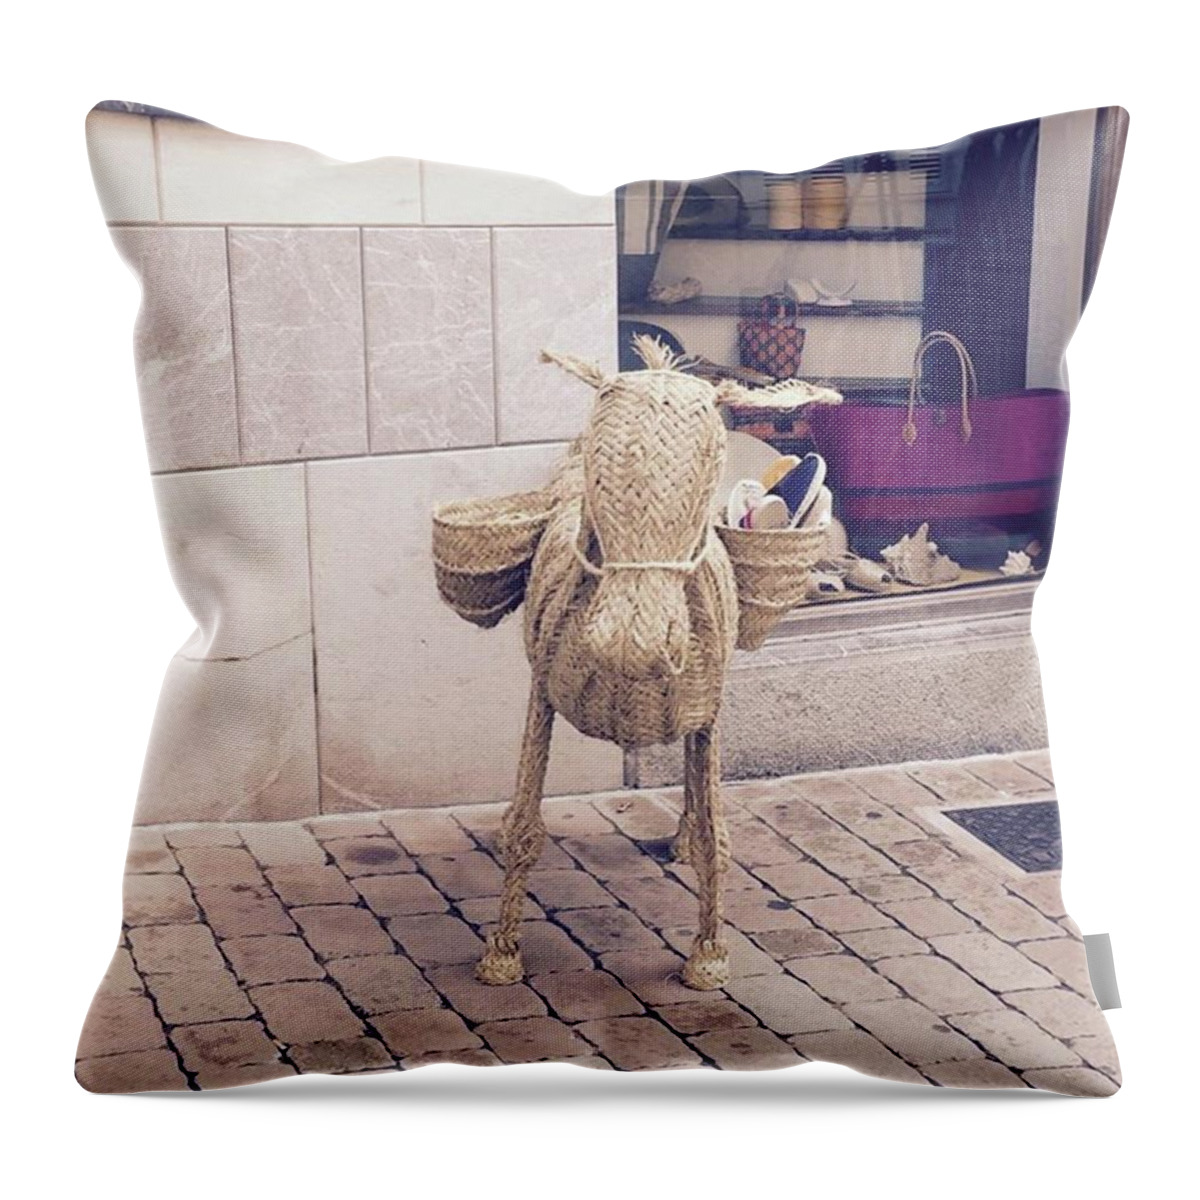 Art Throw Pillow featuring the photograph Flowerpot by Dannise Masiglat